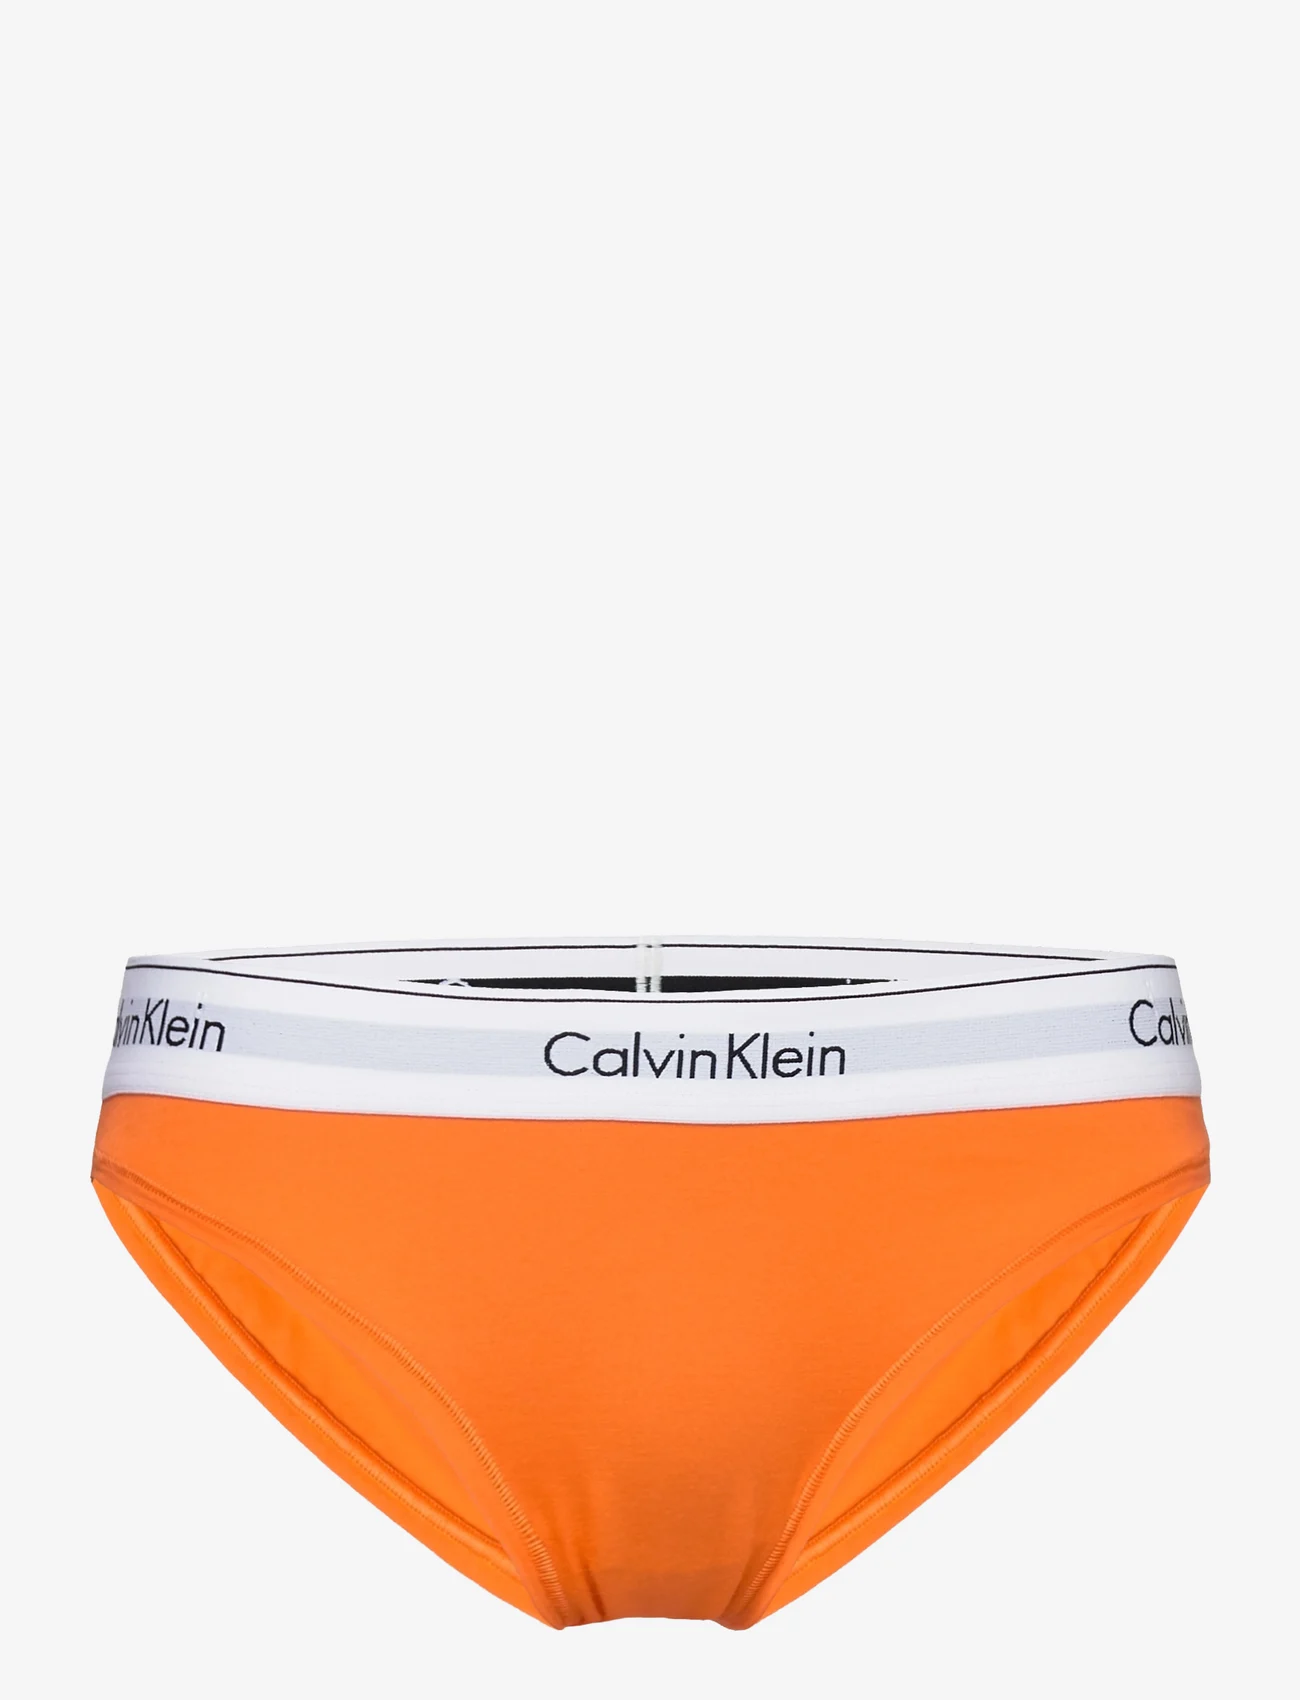 Calvin Klein - BIKINI - lowest prices - carrot - 0